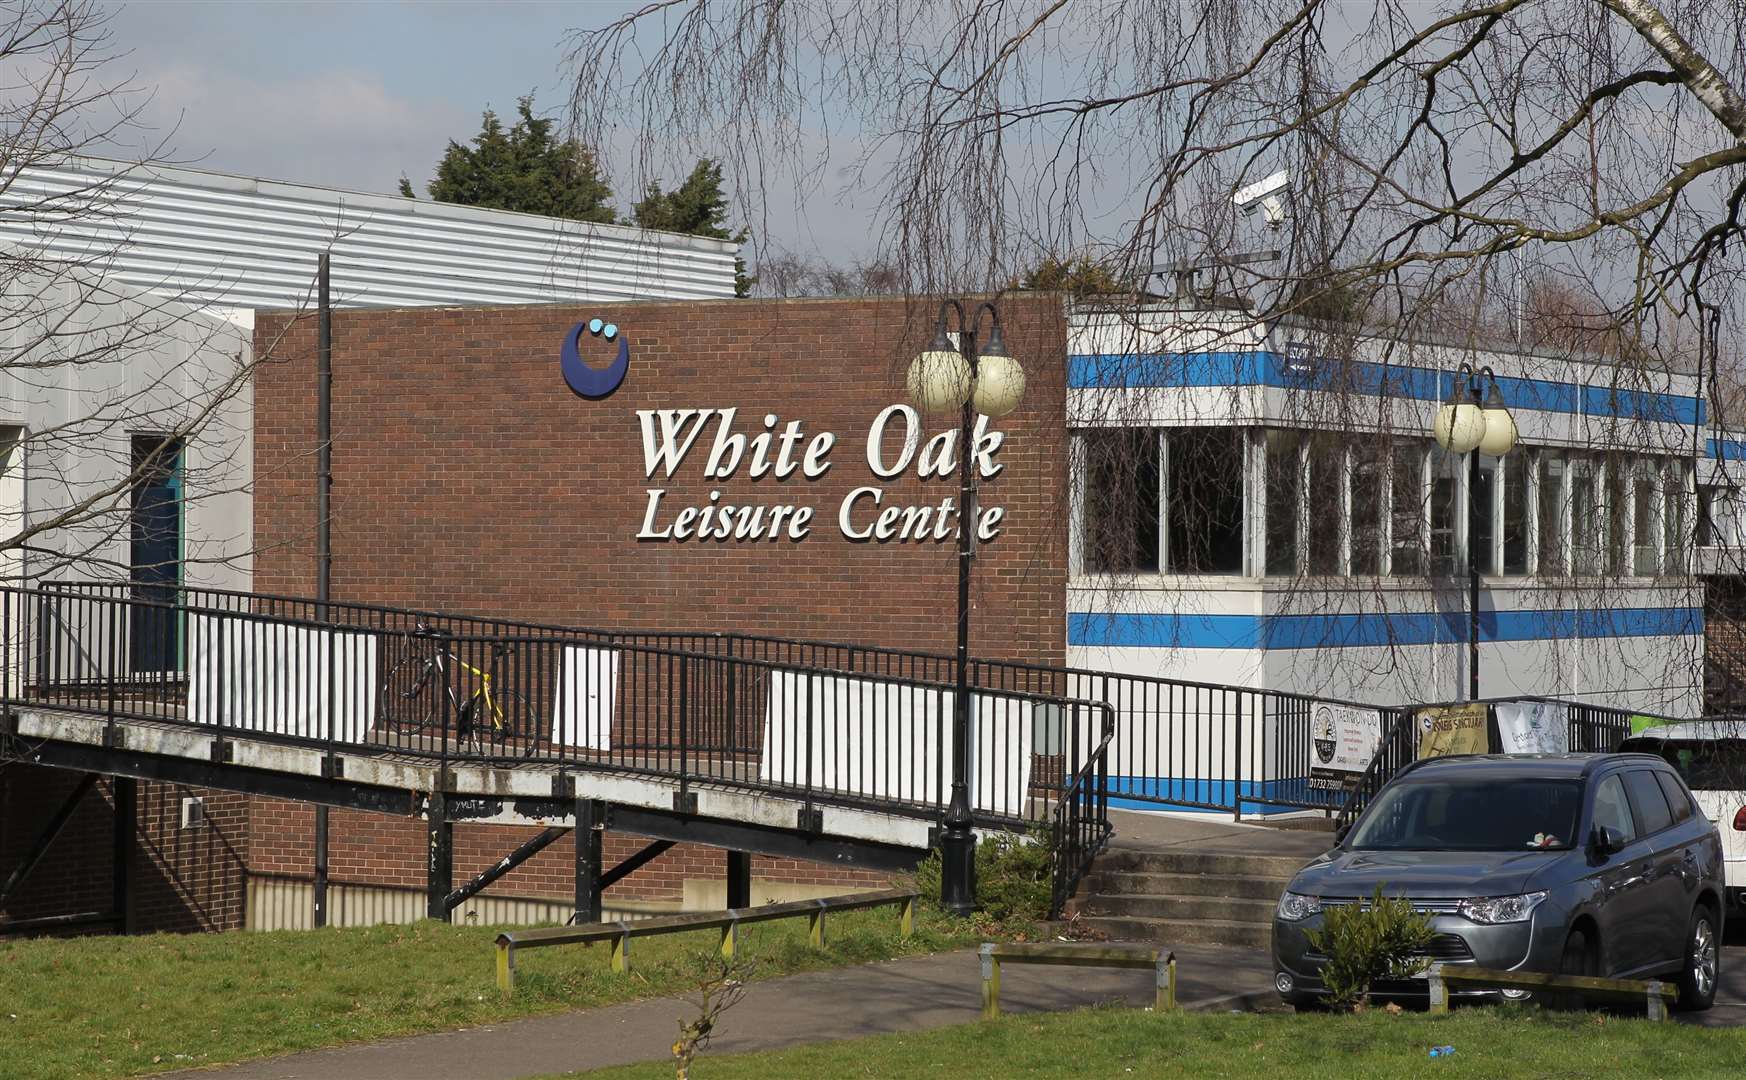 White Oak Leisure Centre in Swanley